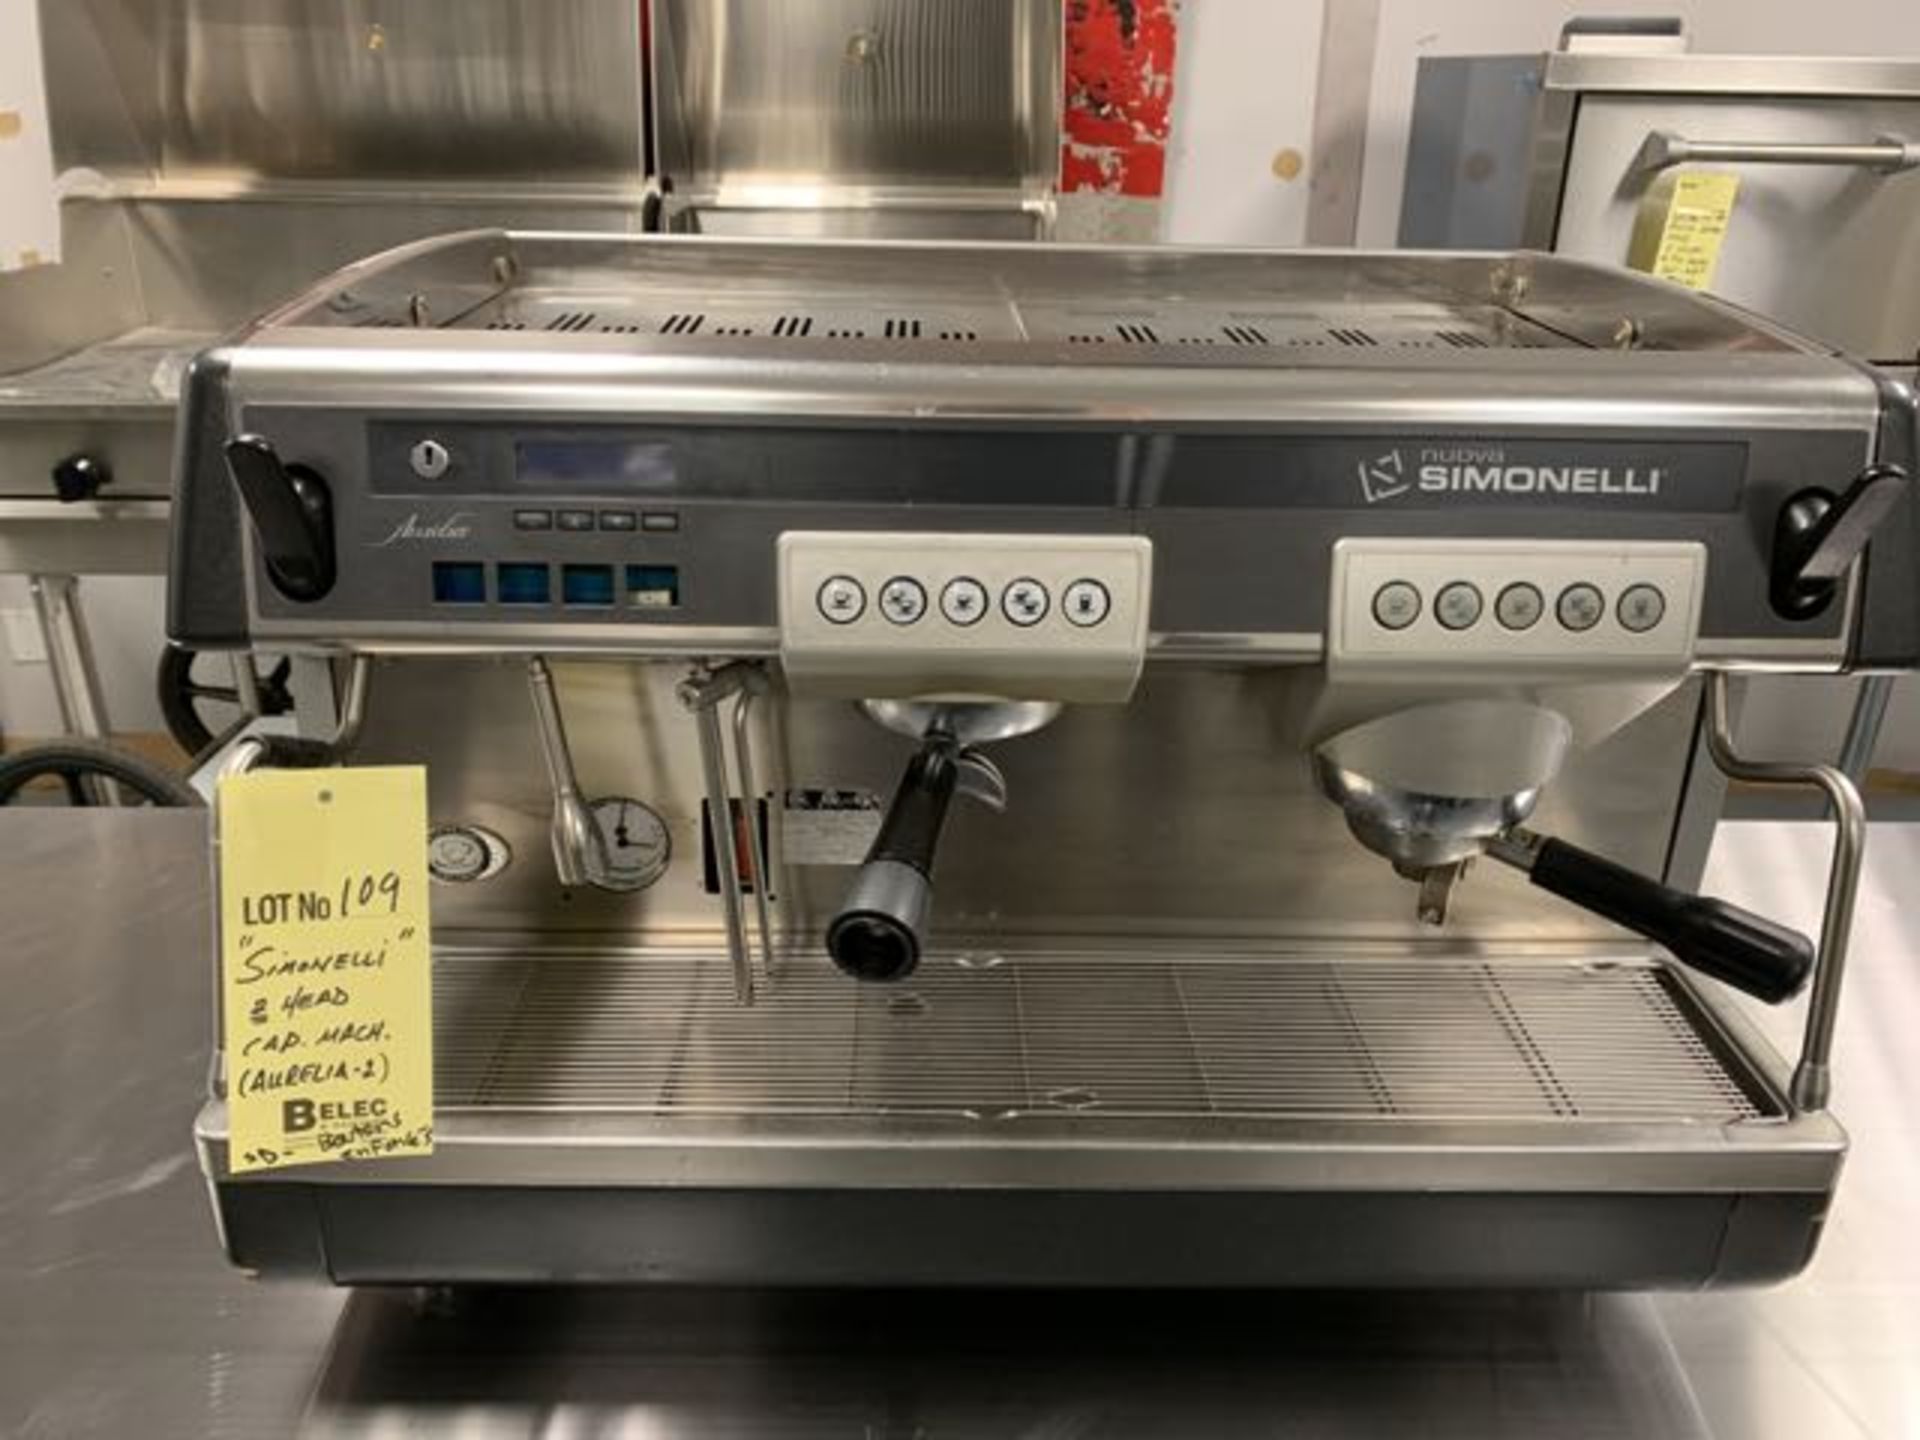 Machine à cappuccino SIMONELLI # AURELIA -2 - Besoin de réparation - boutons gauche enfoncés